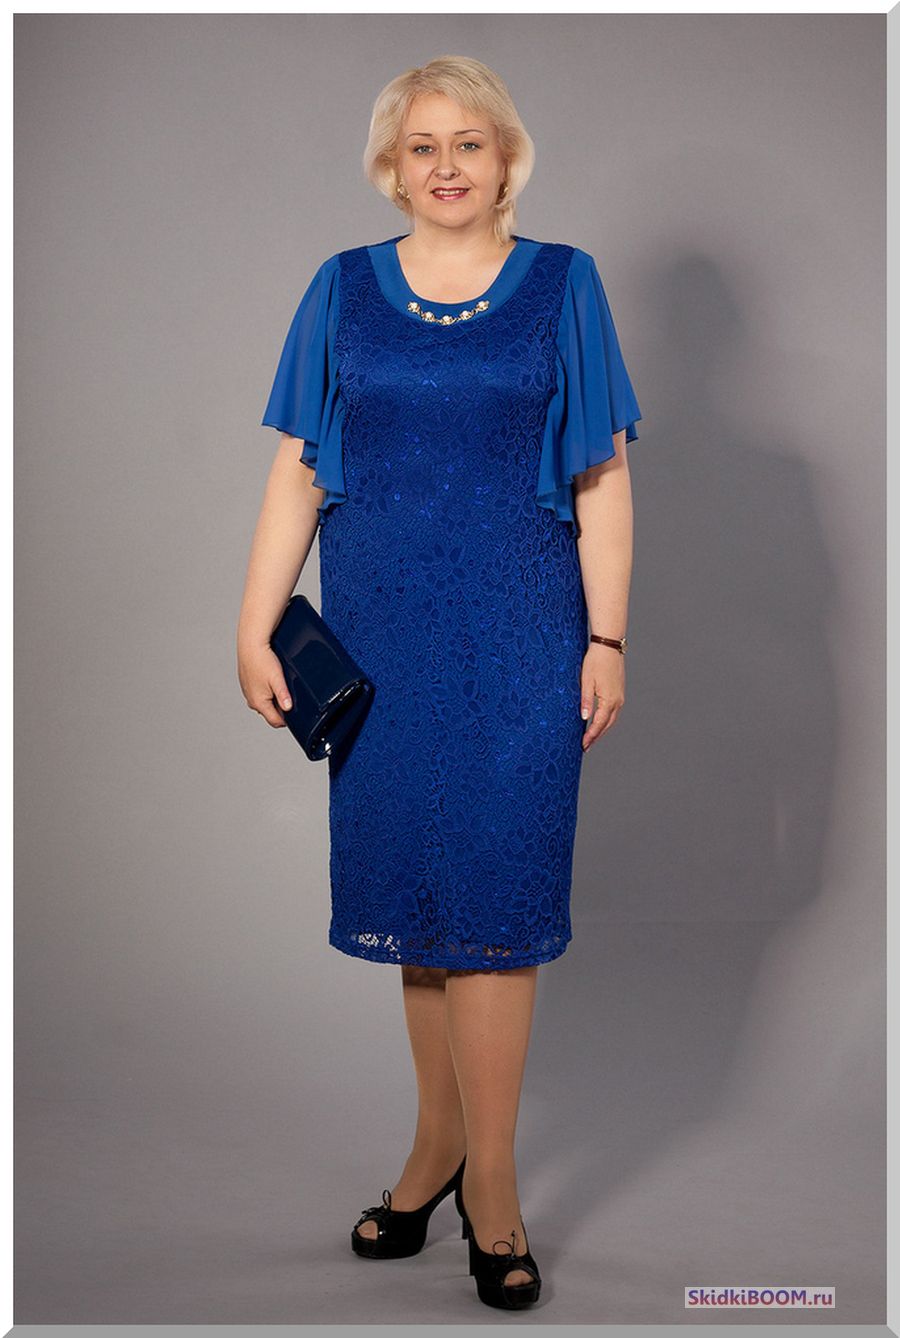 Модные платья для женщин после 50 лет - синее